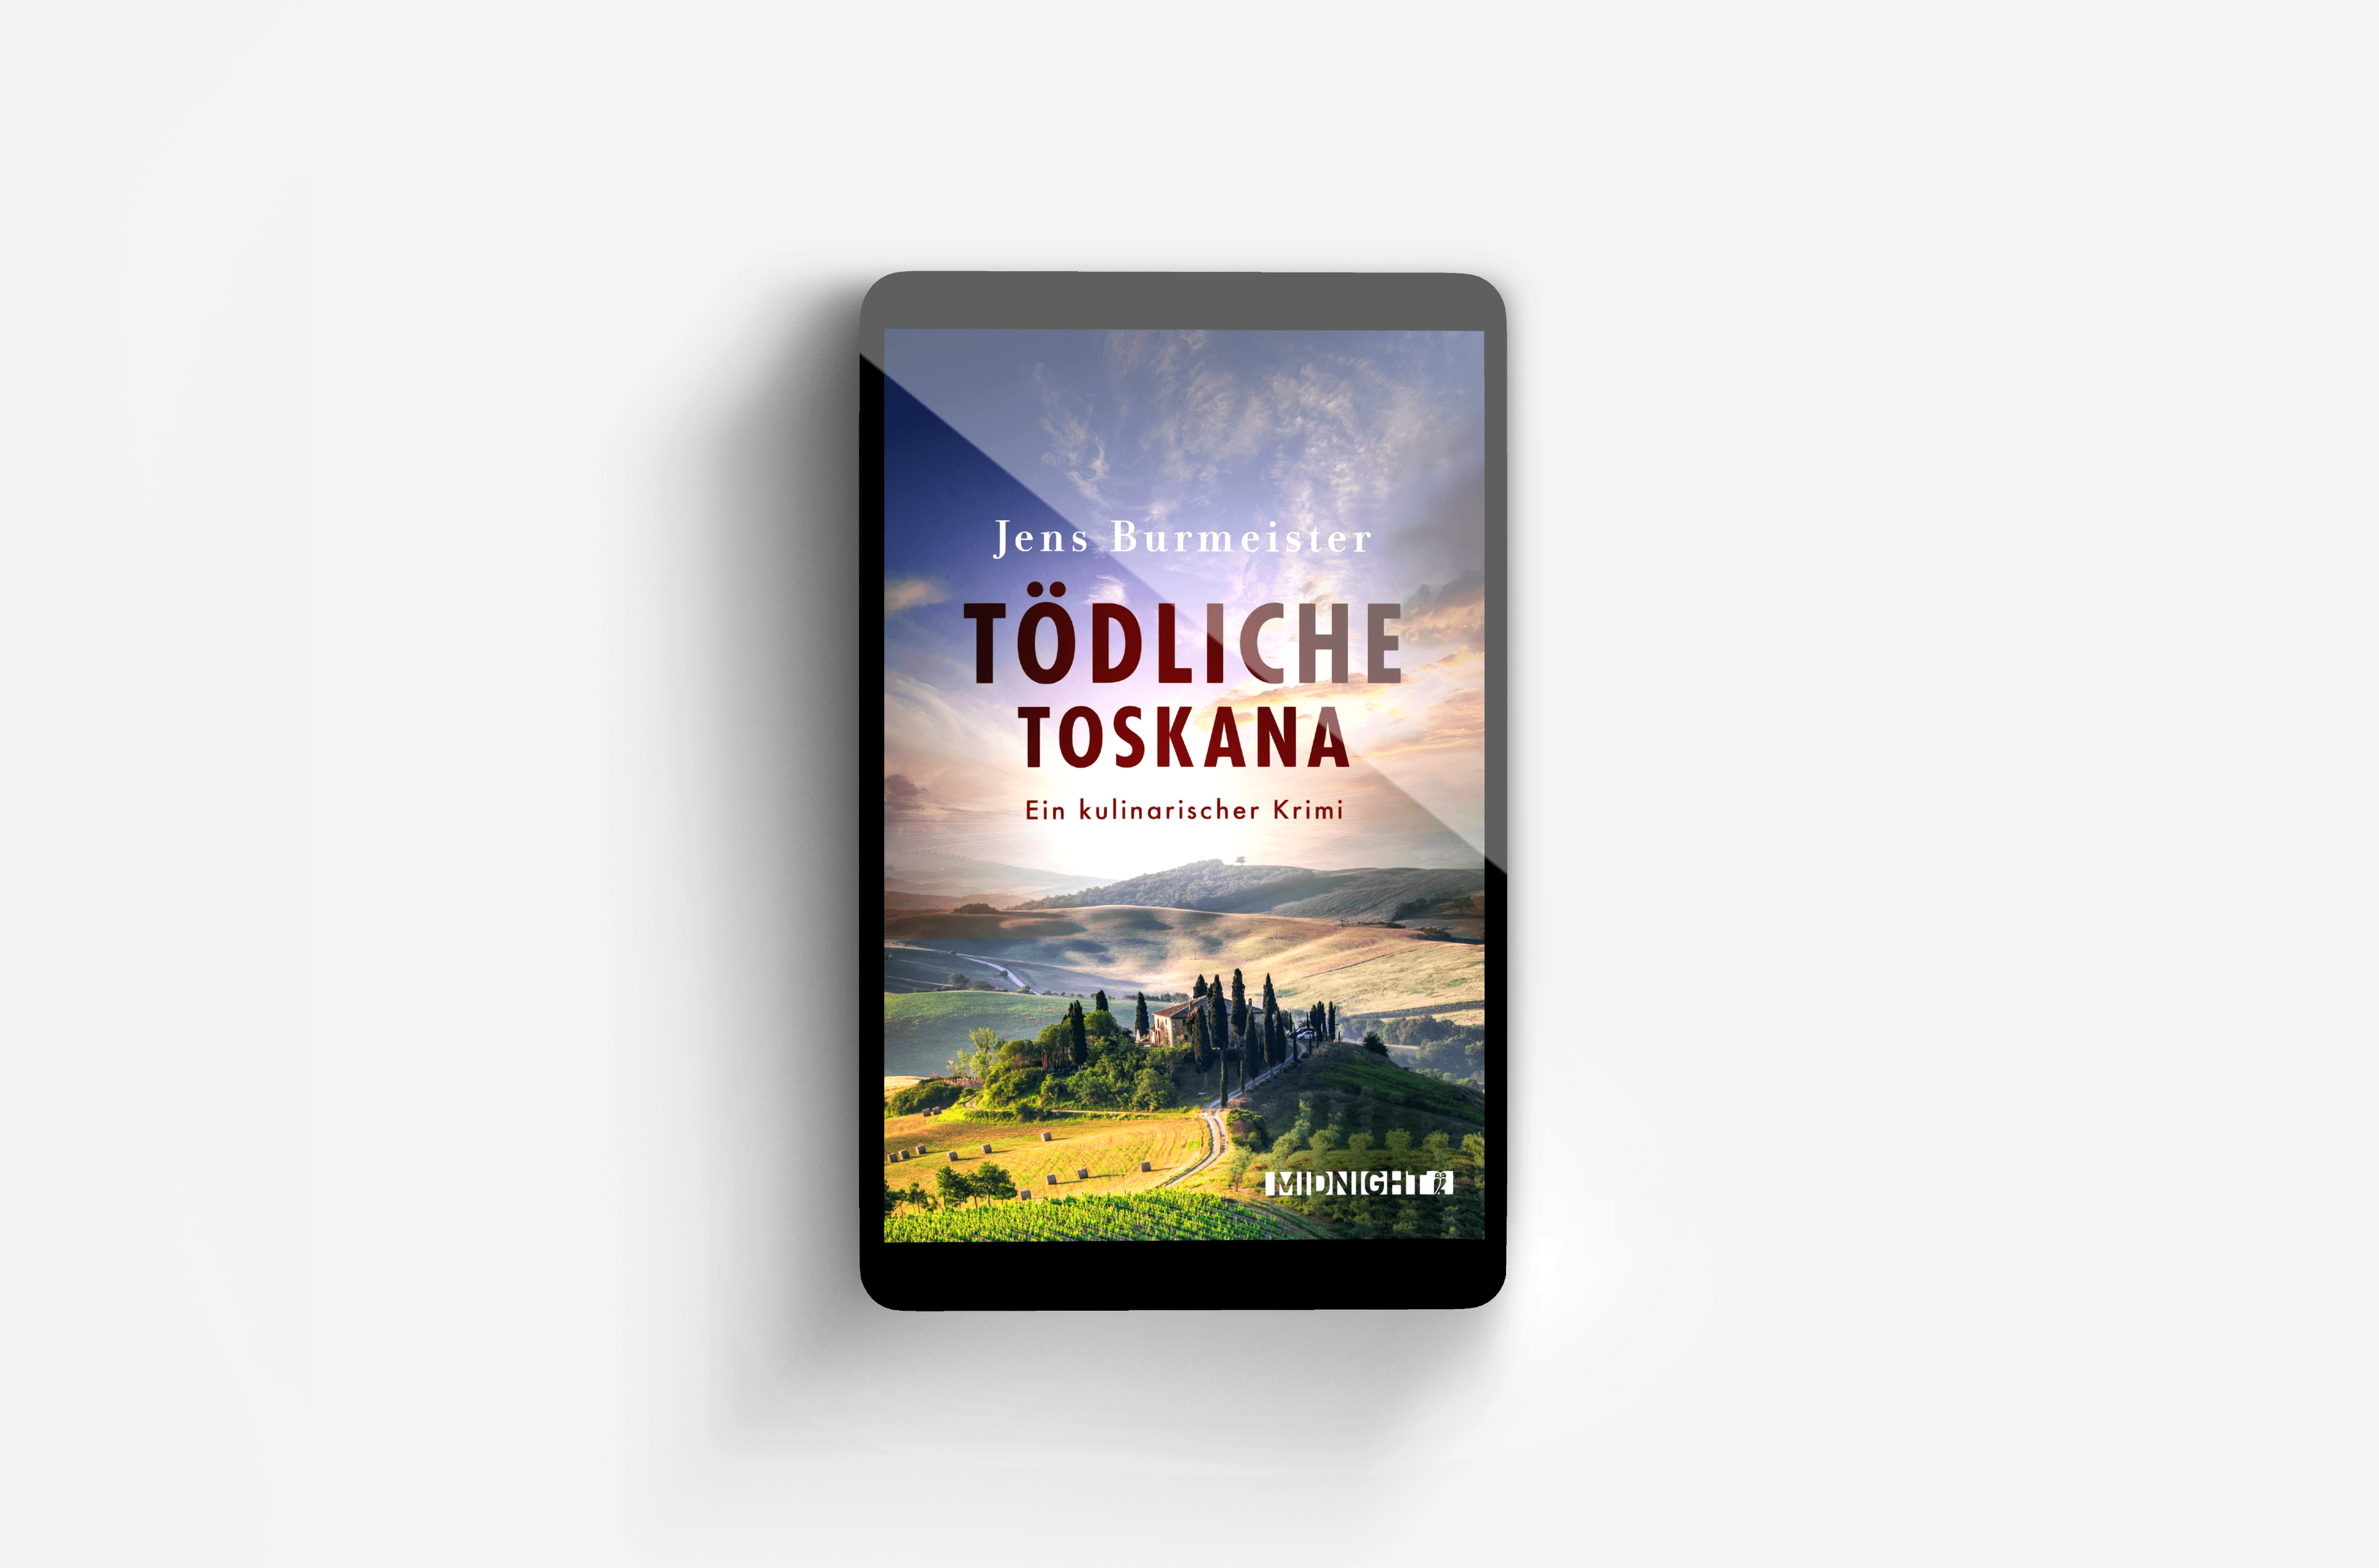 Buchcover von Tödliche Toskana (Professor Tiefenthal ermittelt 1)